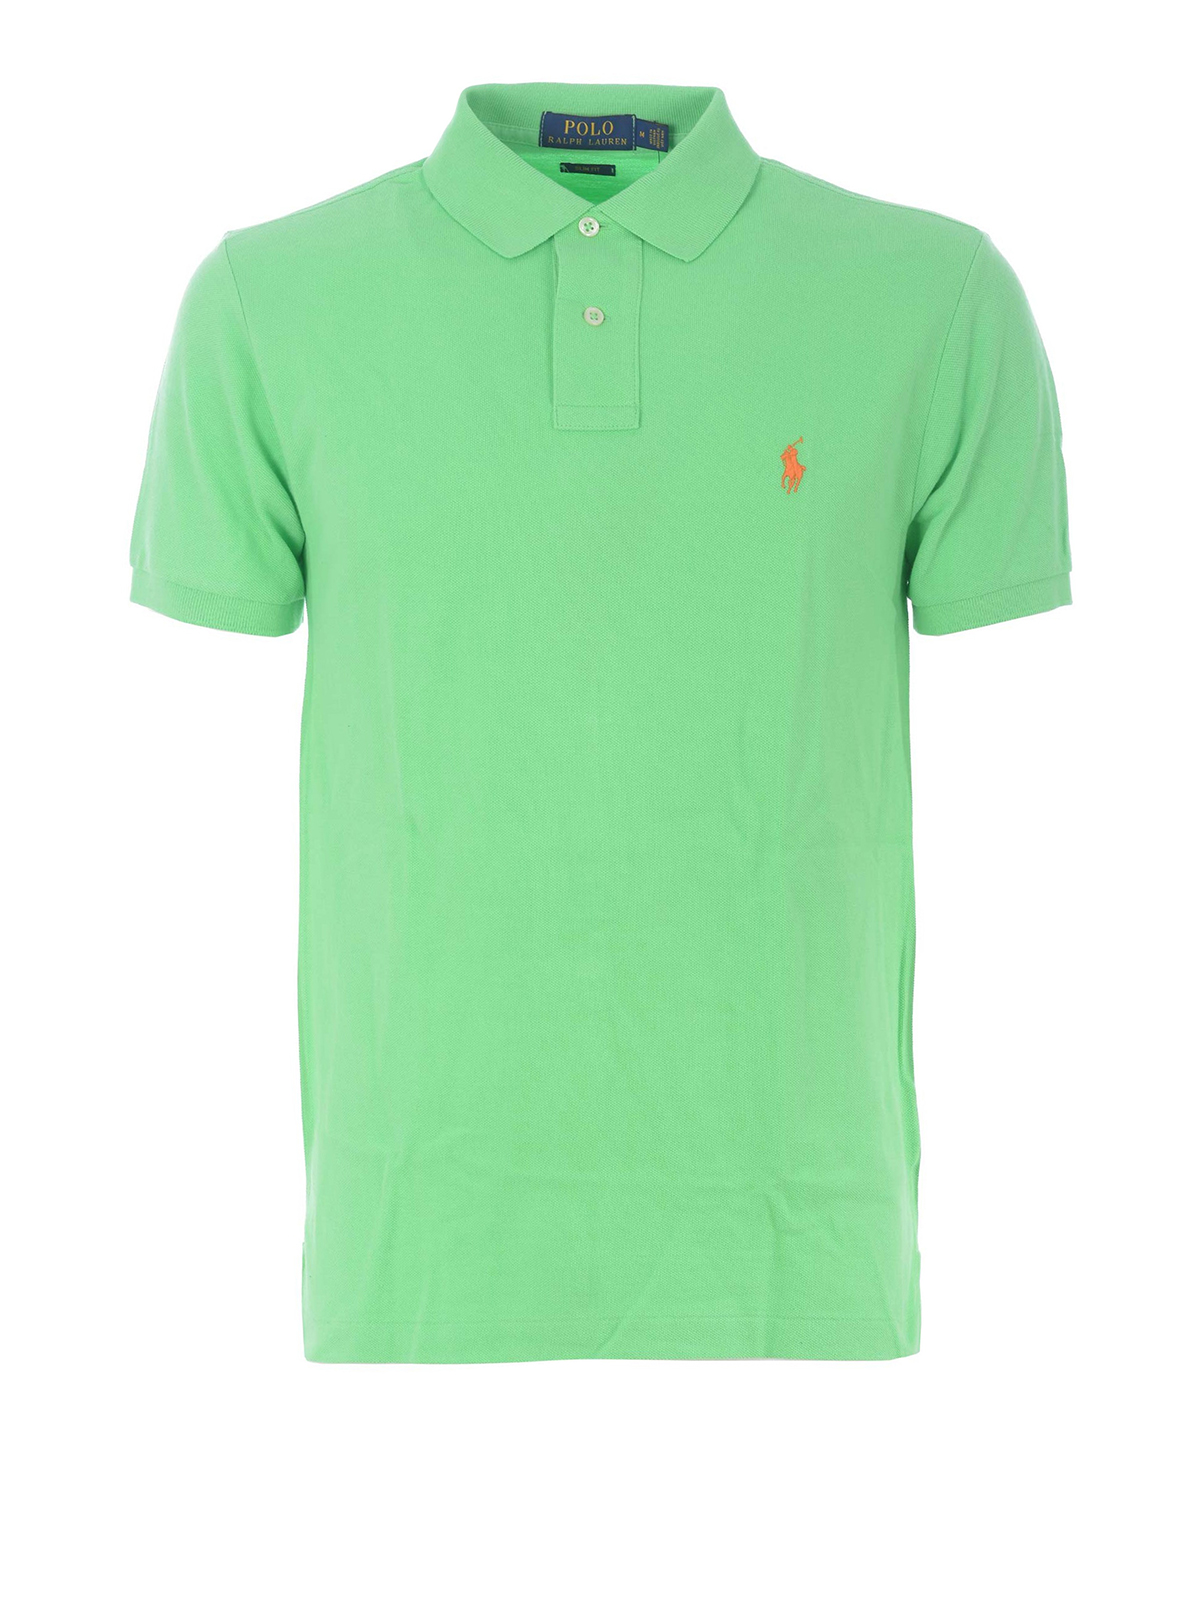 Polo shirts Polo Ralph Lauren - Light green pique cotton polo shirt -  536856161